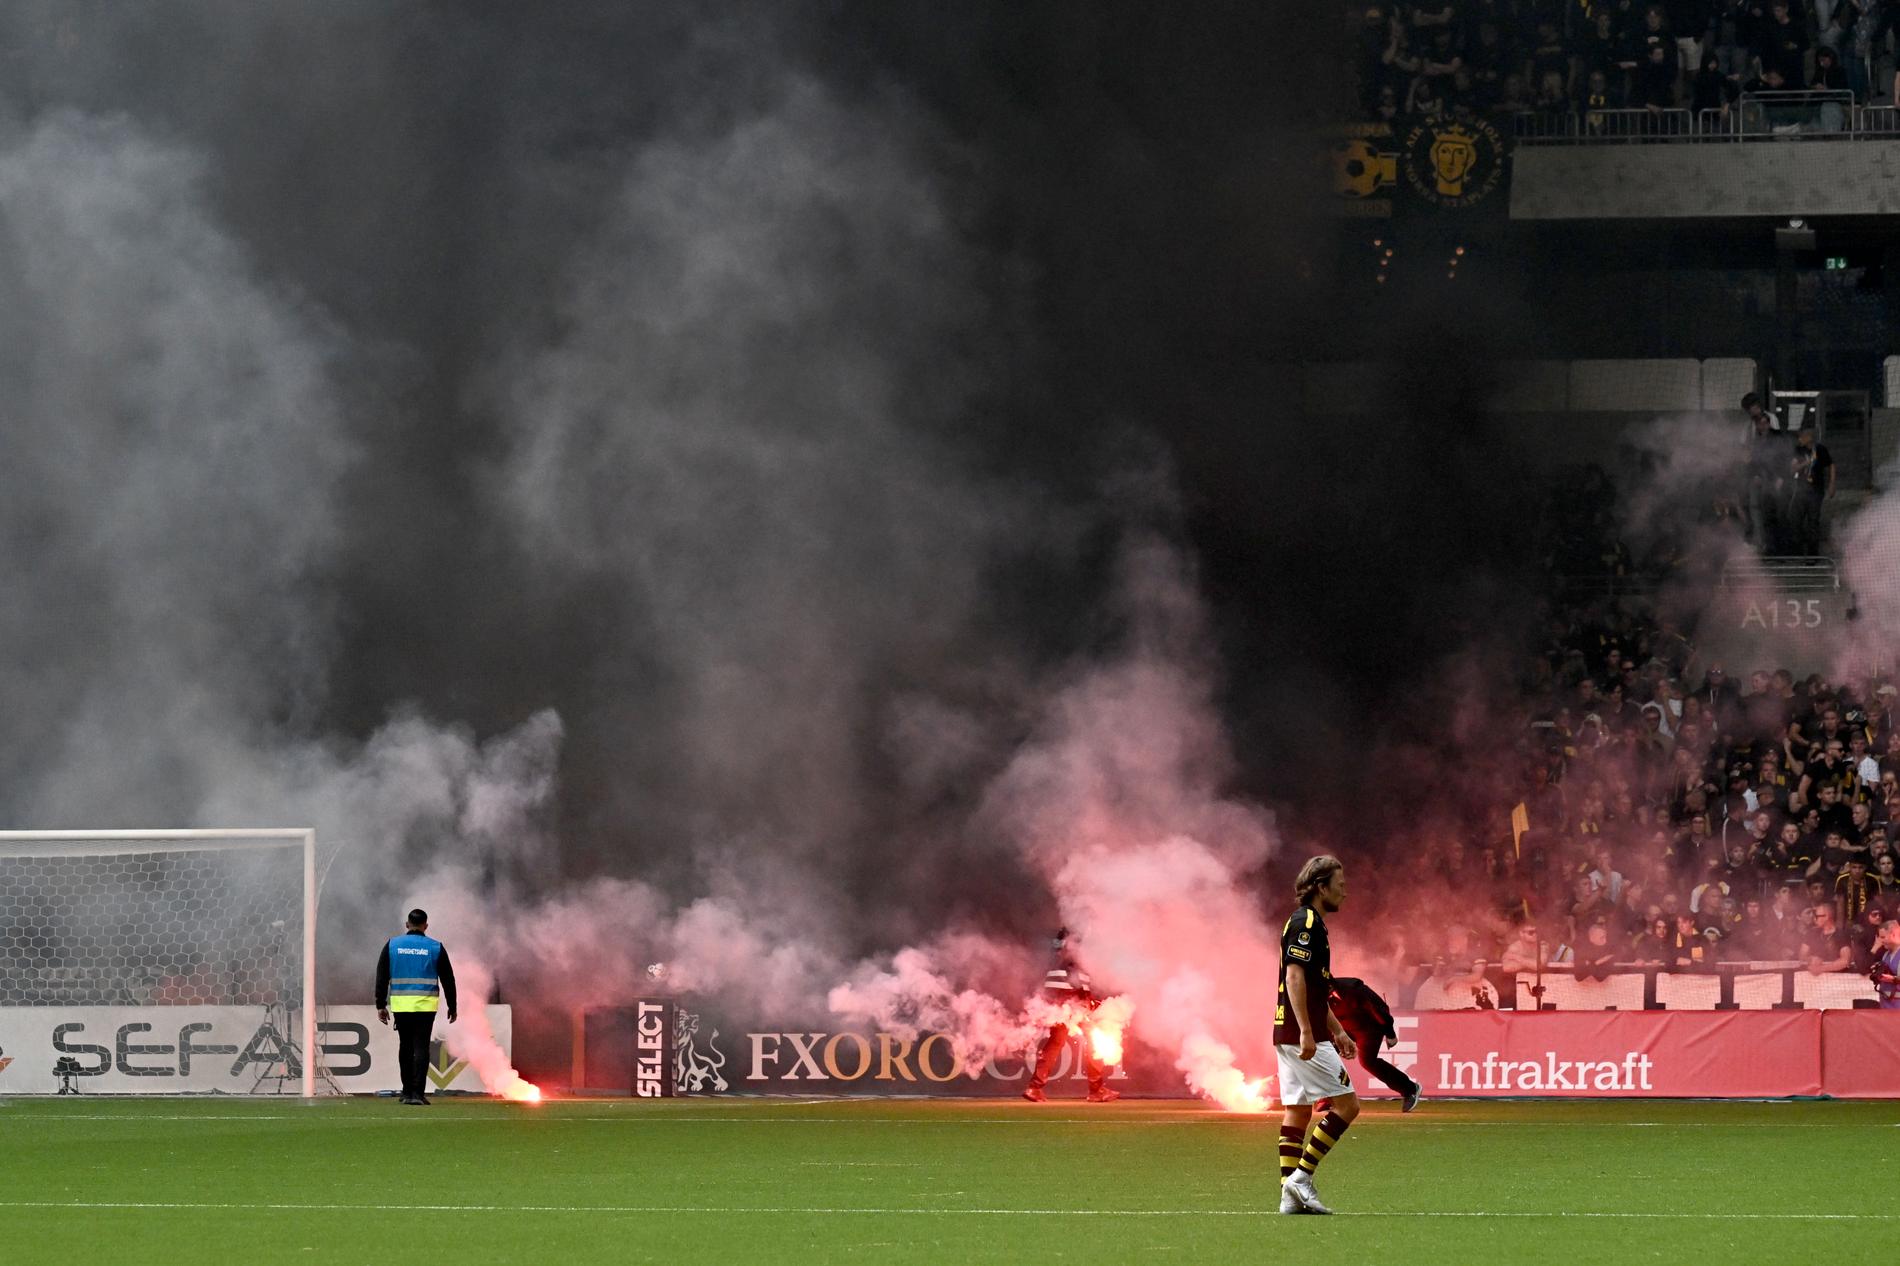 Bengaler kastas in på plan under söndagens fotbollsmatch i allsvenskan mellan Djurgårdens IF och AIK.